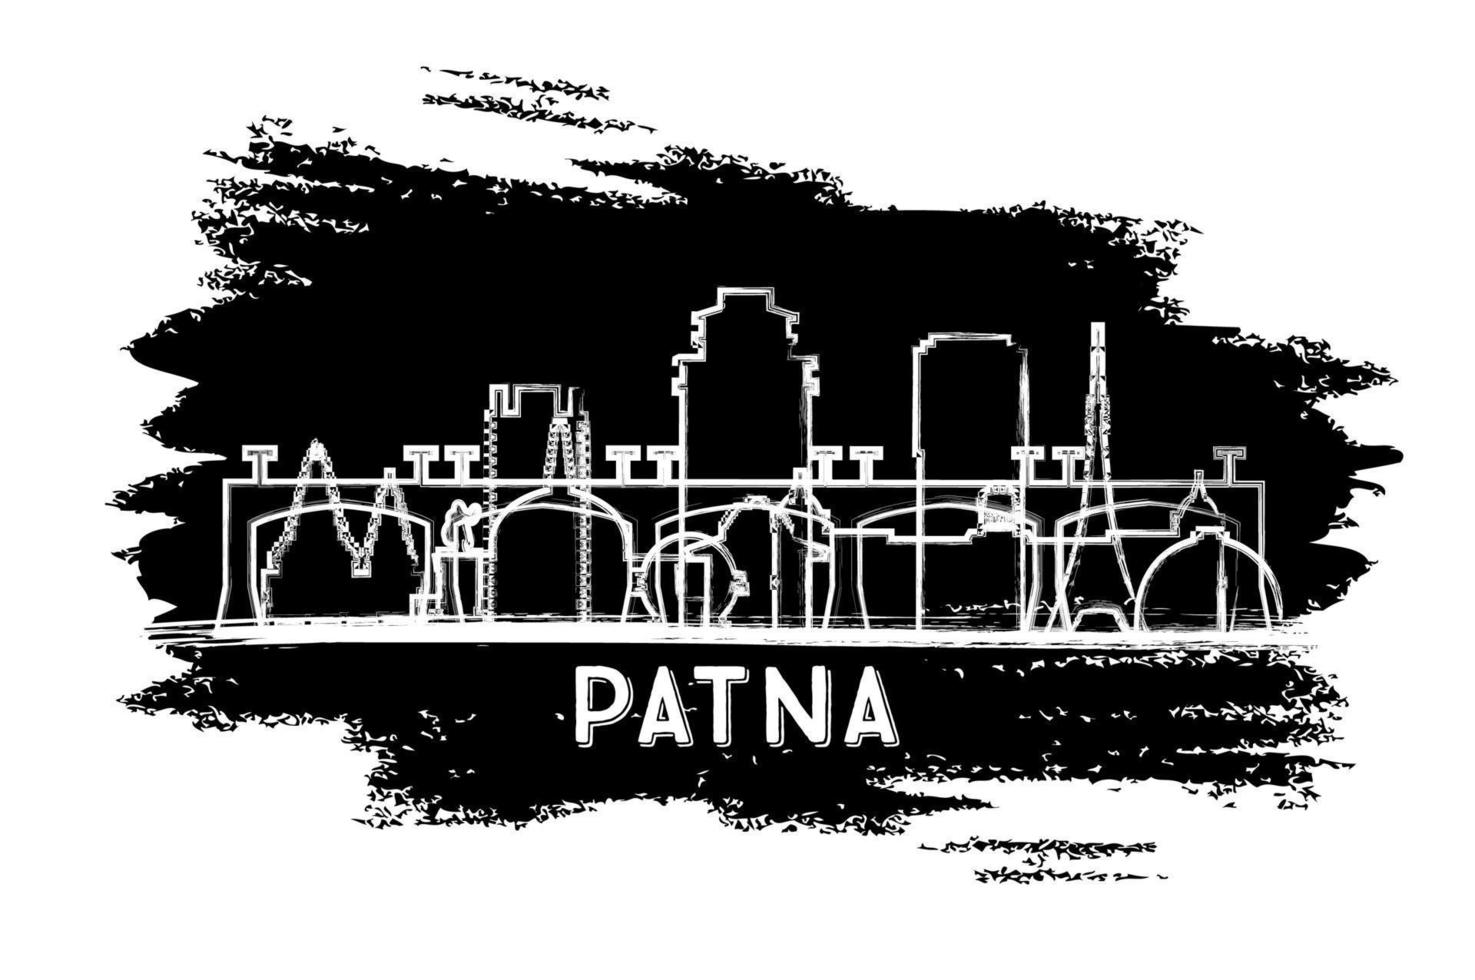 silueta del horizonte de la ciudad de patna india. boceto dibujado a mano. vector